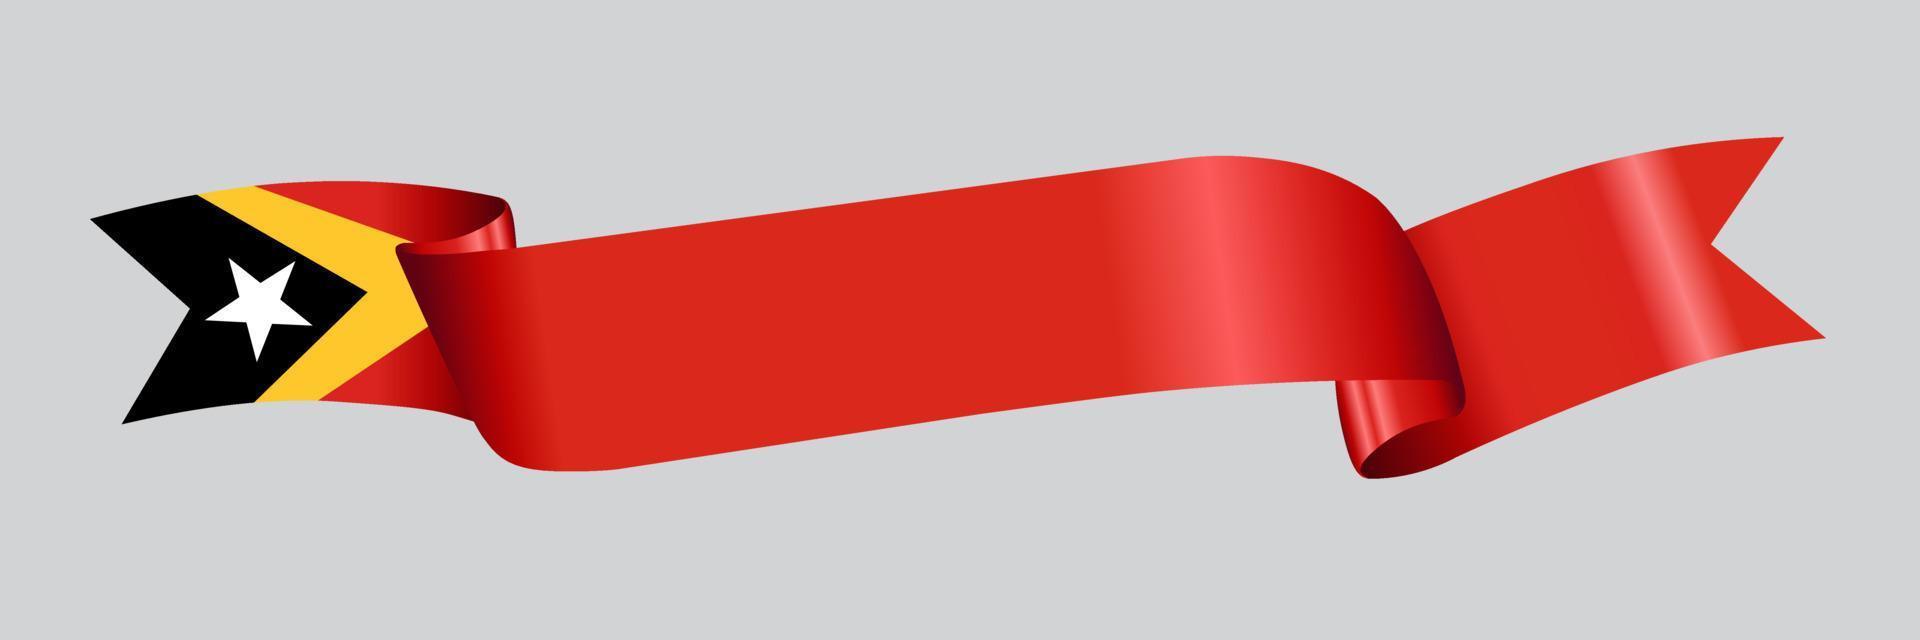 3D Flag of East Timor on ribbon. vector